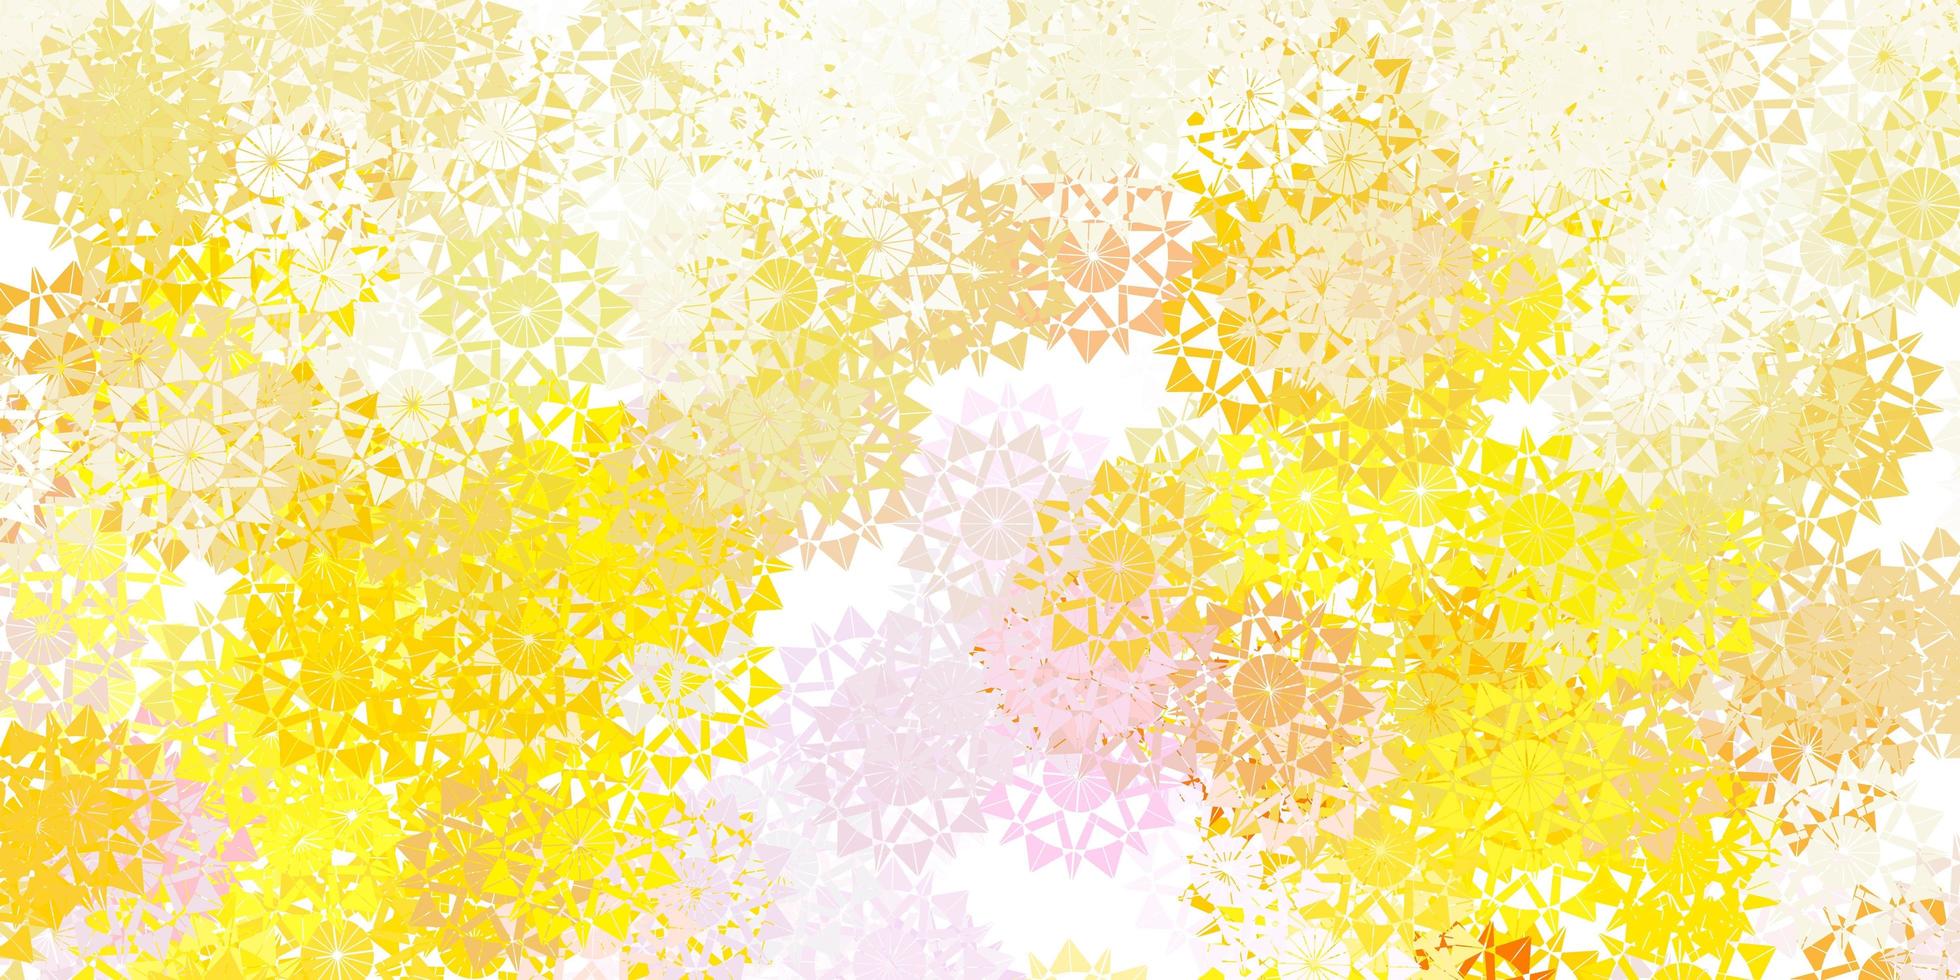 patrón de vector amarillo rosa claro con copos de nieve de colores